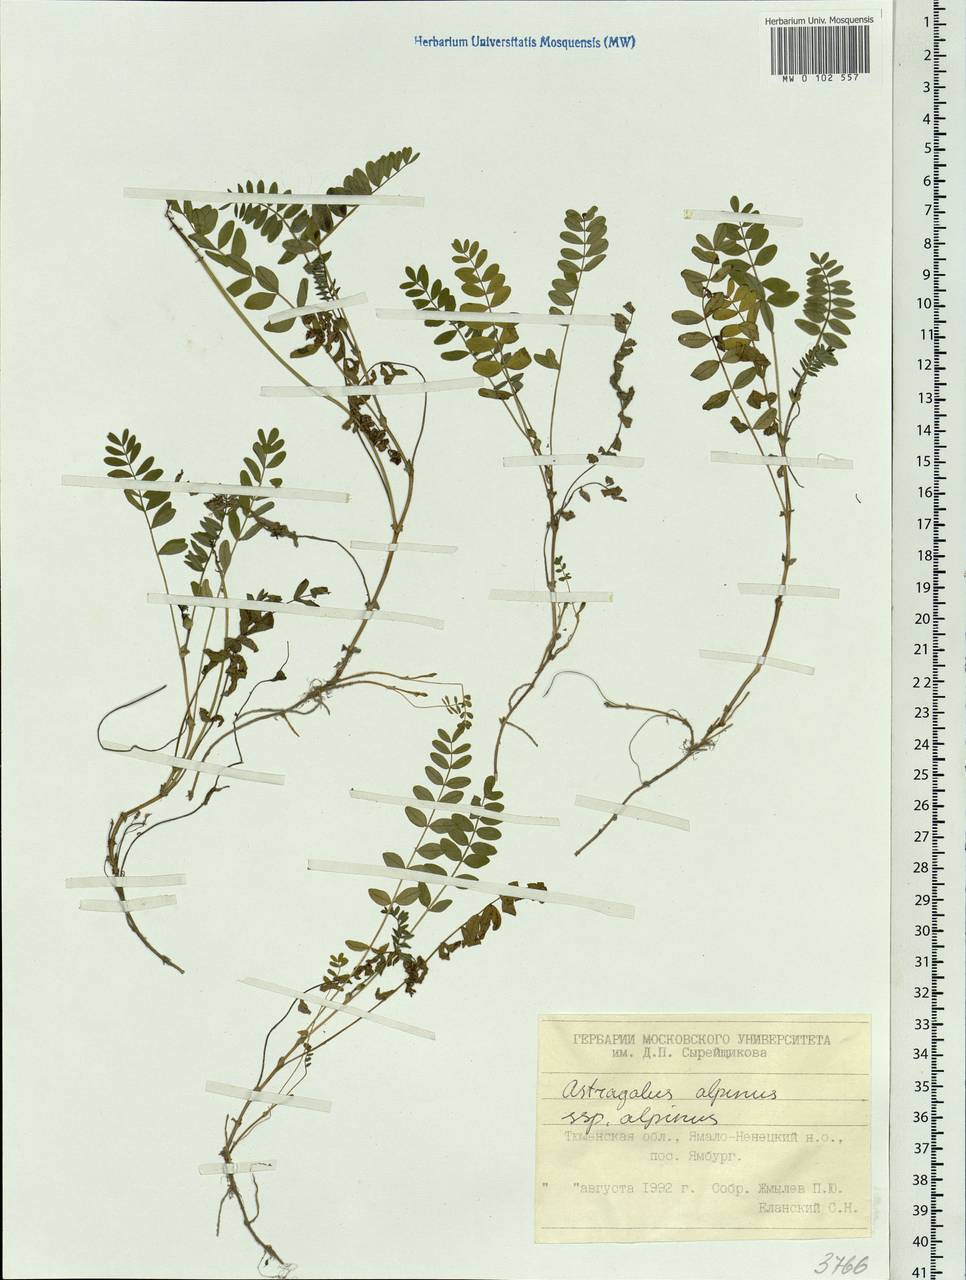 Astragalus alpinus L., Siberia, Western Siberia (S1) (Russia)